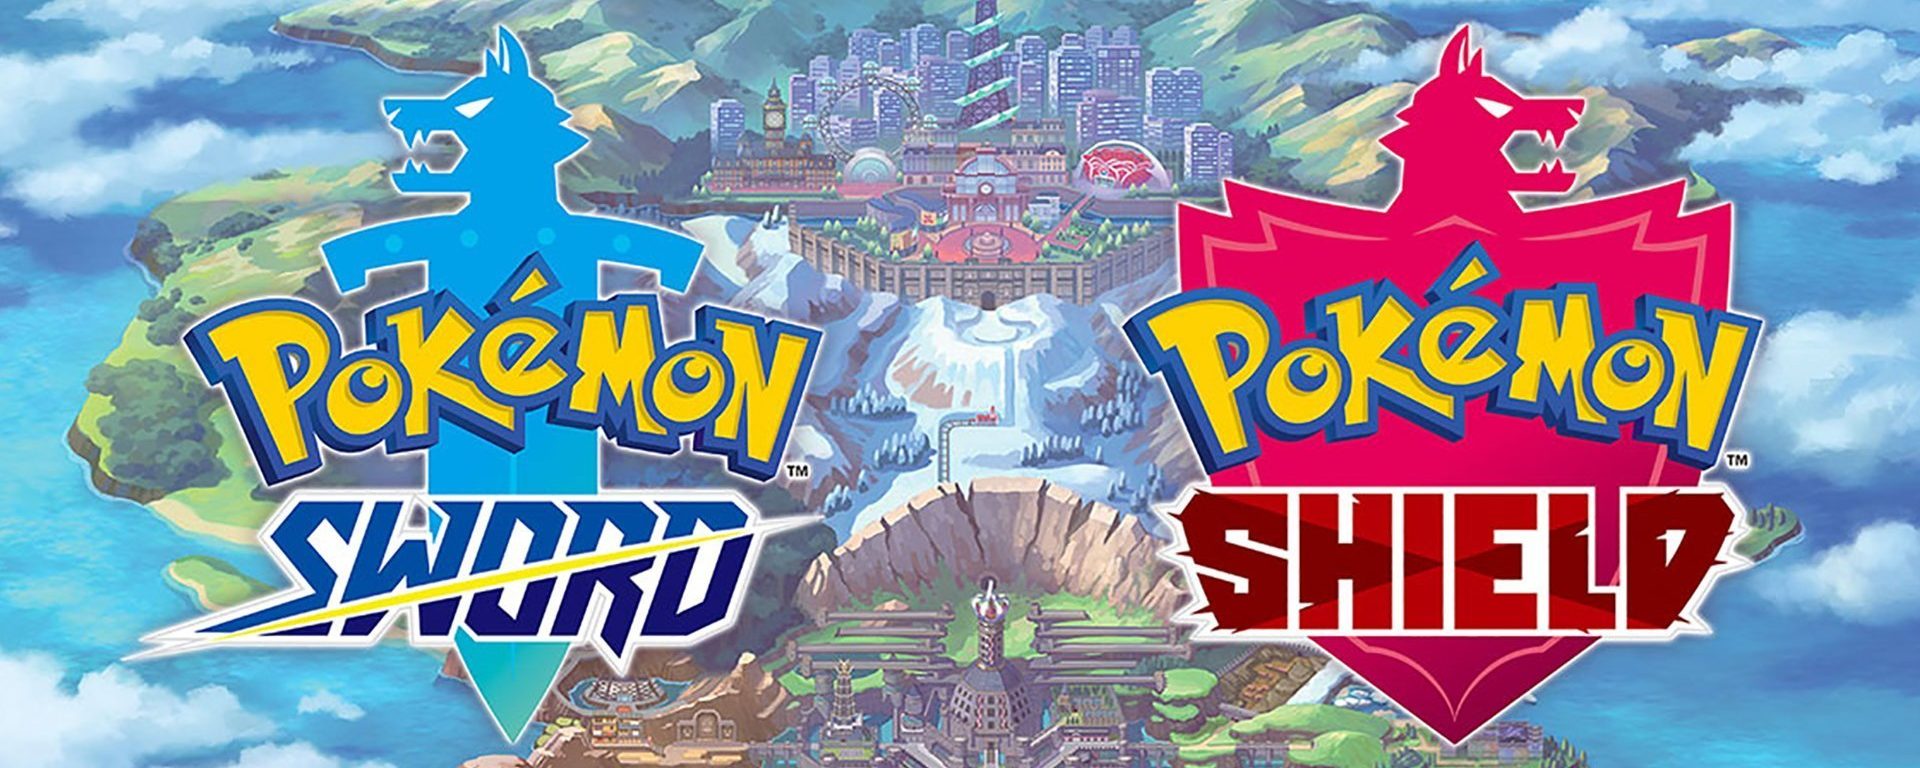 Pokémon-Sword-Shield-Observatório-de-Games